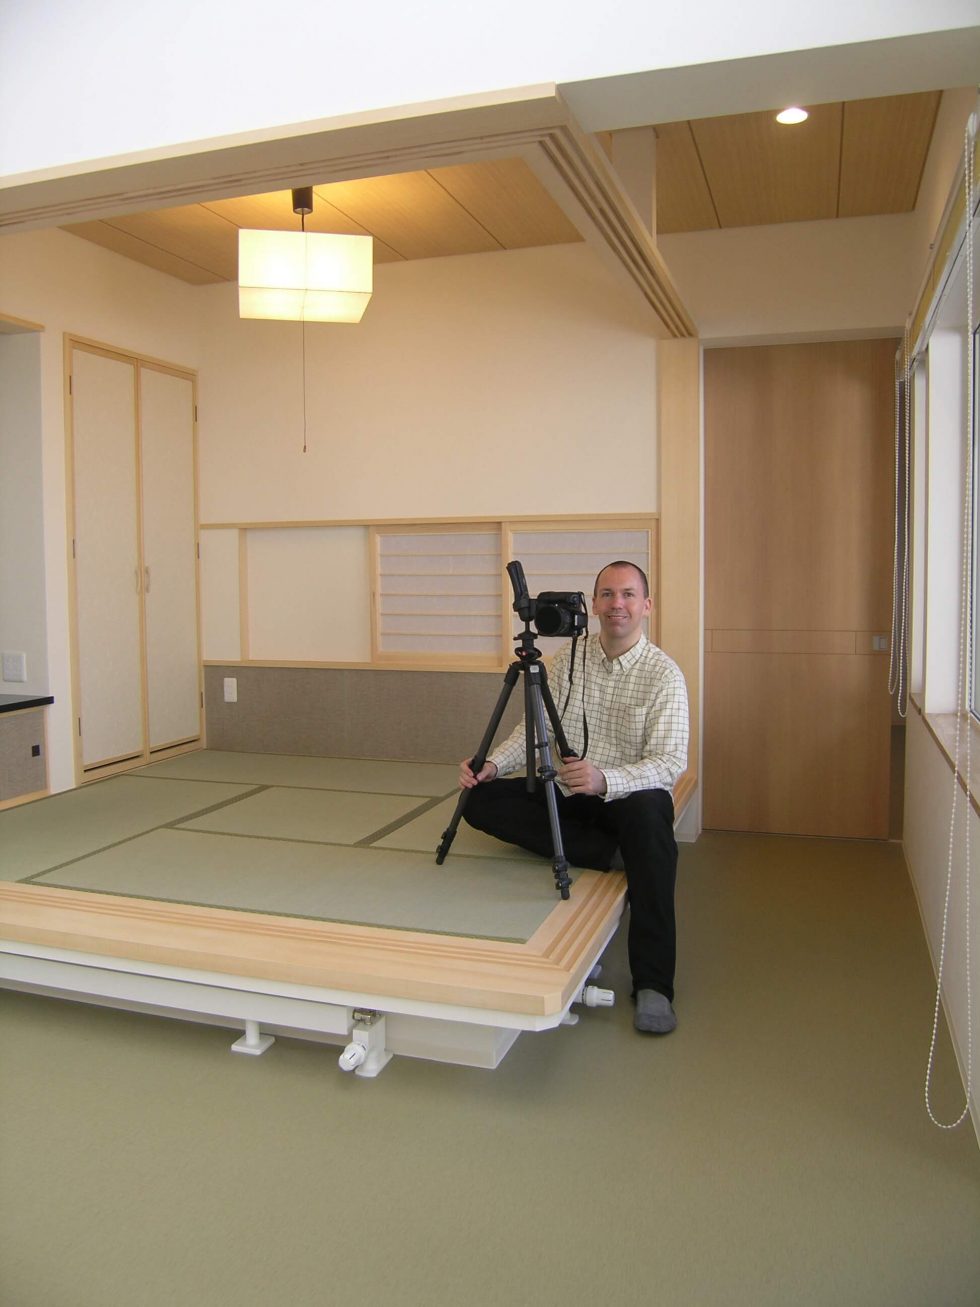 北海道の建築写真・風景・人物 (Photographer: Glen Charles Rowell) With Camera in a Japanese Room, Sapporo, Hokkaido, Japan